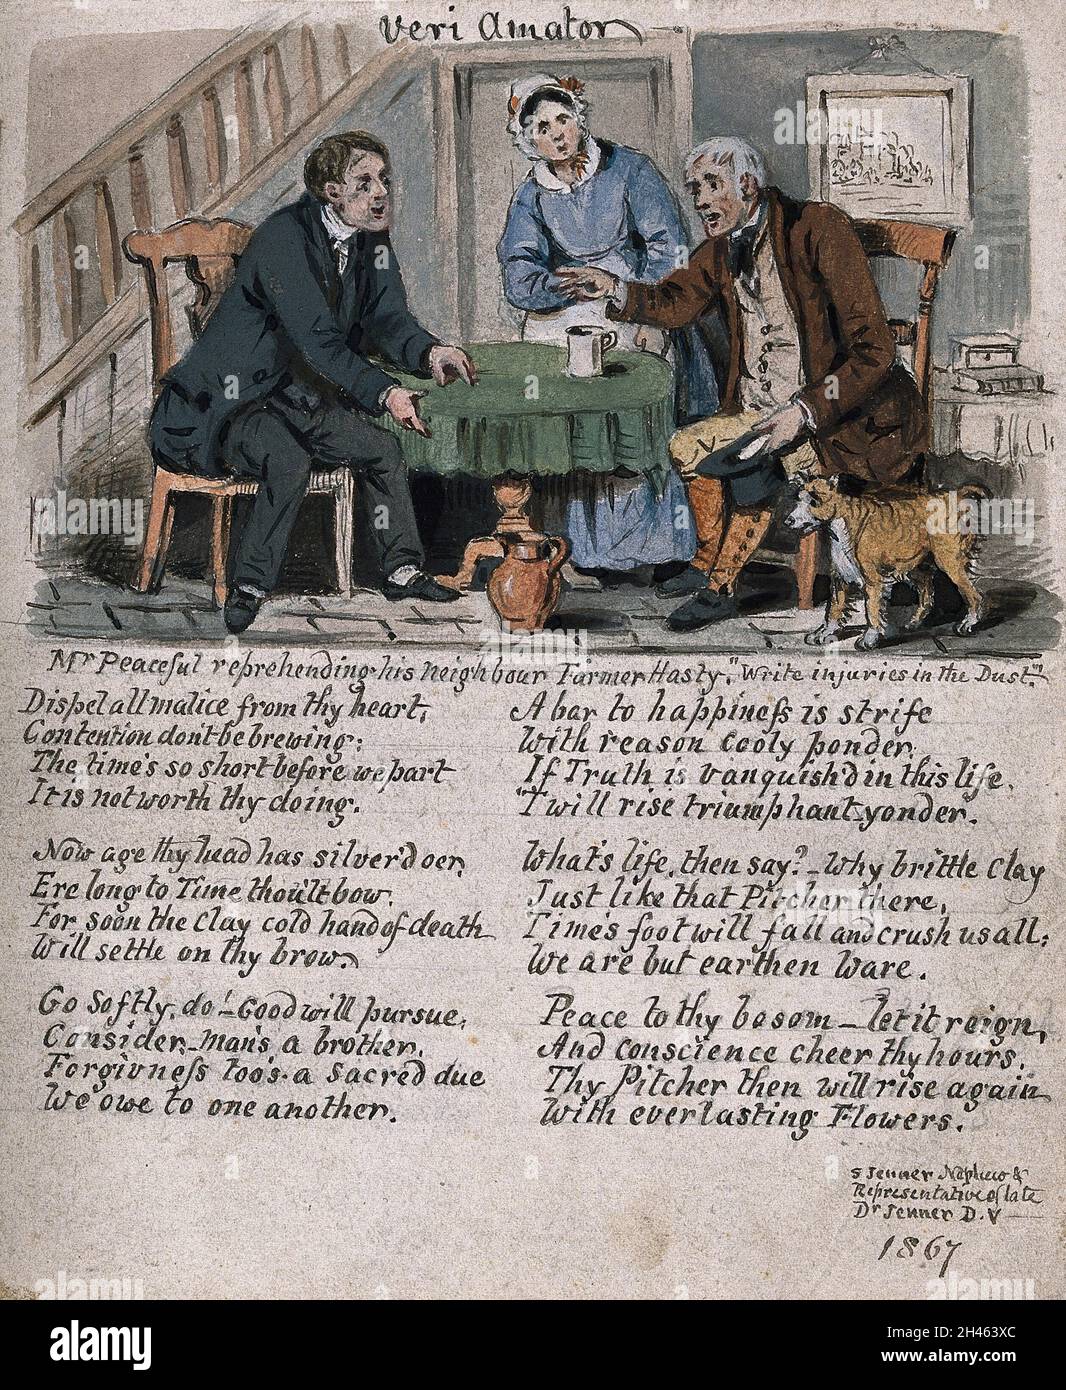 Ein Bauer, der sich schnell beleidigt, und sein Nachbar, der versucht, ihn  zu beruhigen; eine Frau und ein Hund neben ihnen. Aquarell von S. Jenner,  1867 Stockfotografie - Alamy